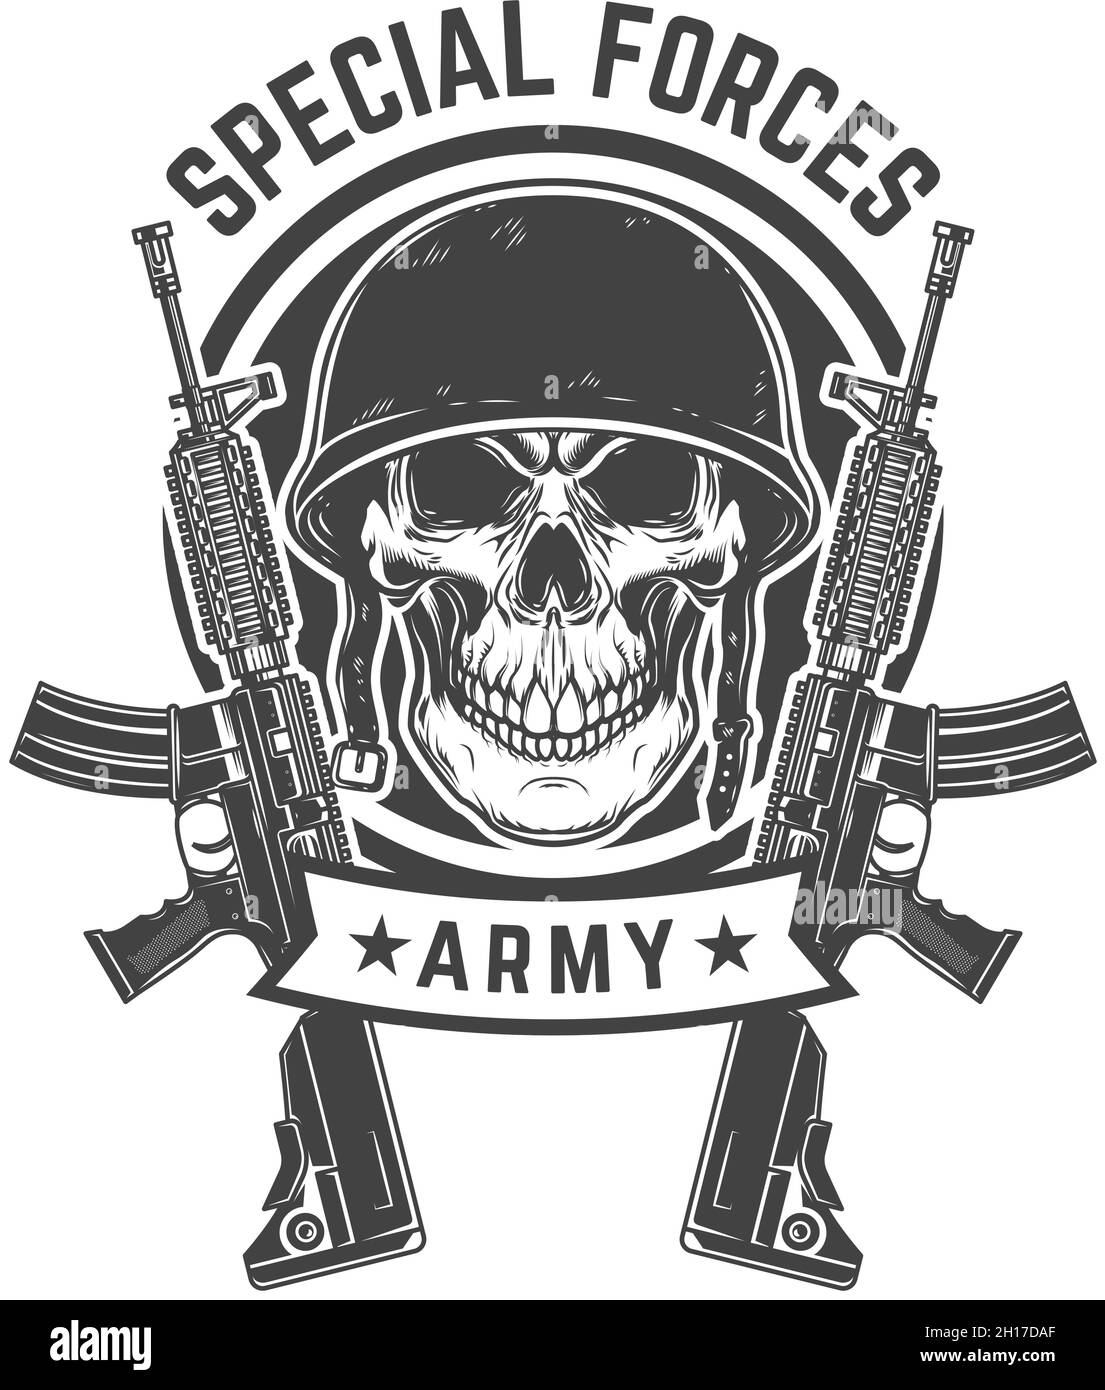 Soldier skull with assault rifles. Design element for logo, label, sign, emblem, poster. Vector illustration Stock Vector